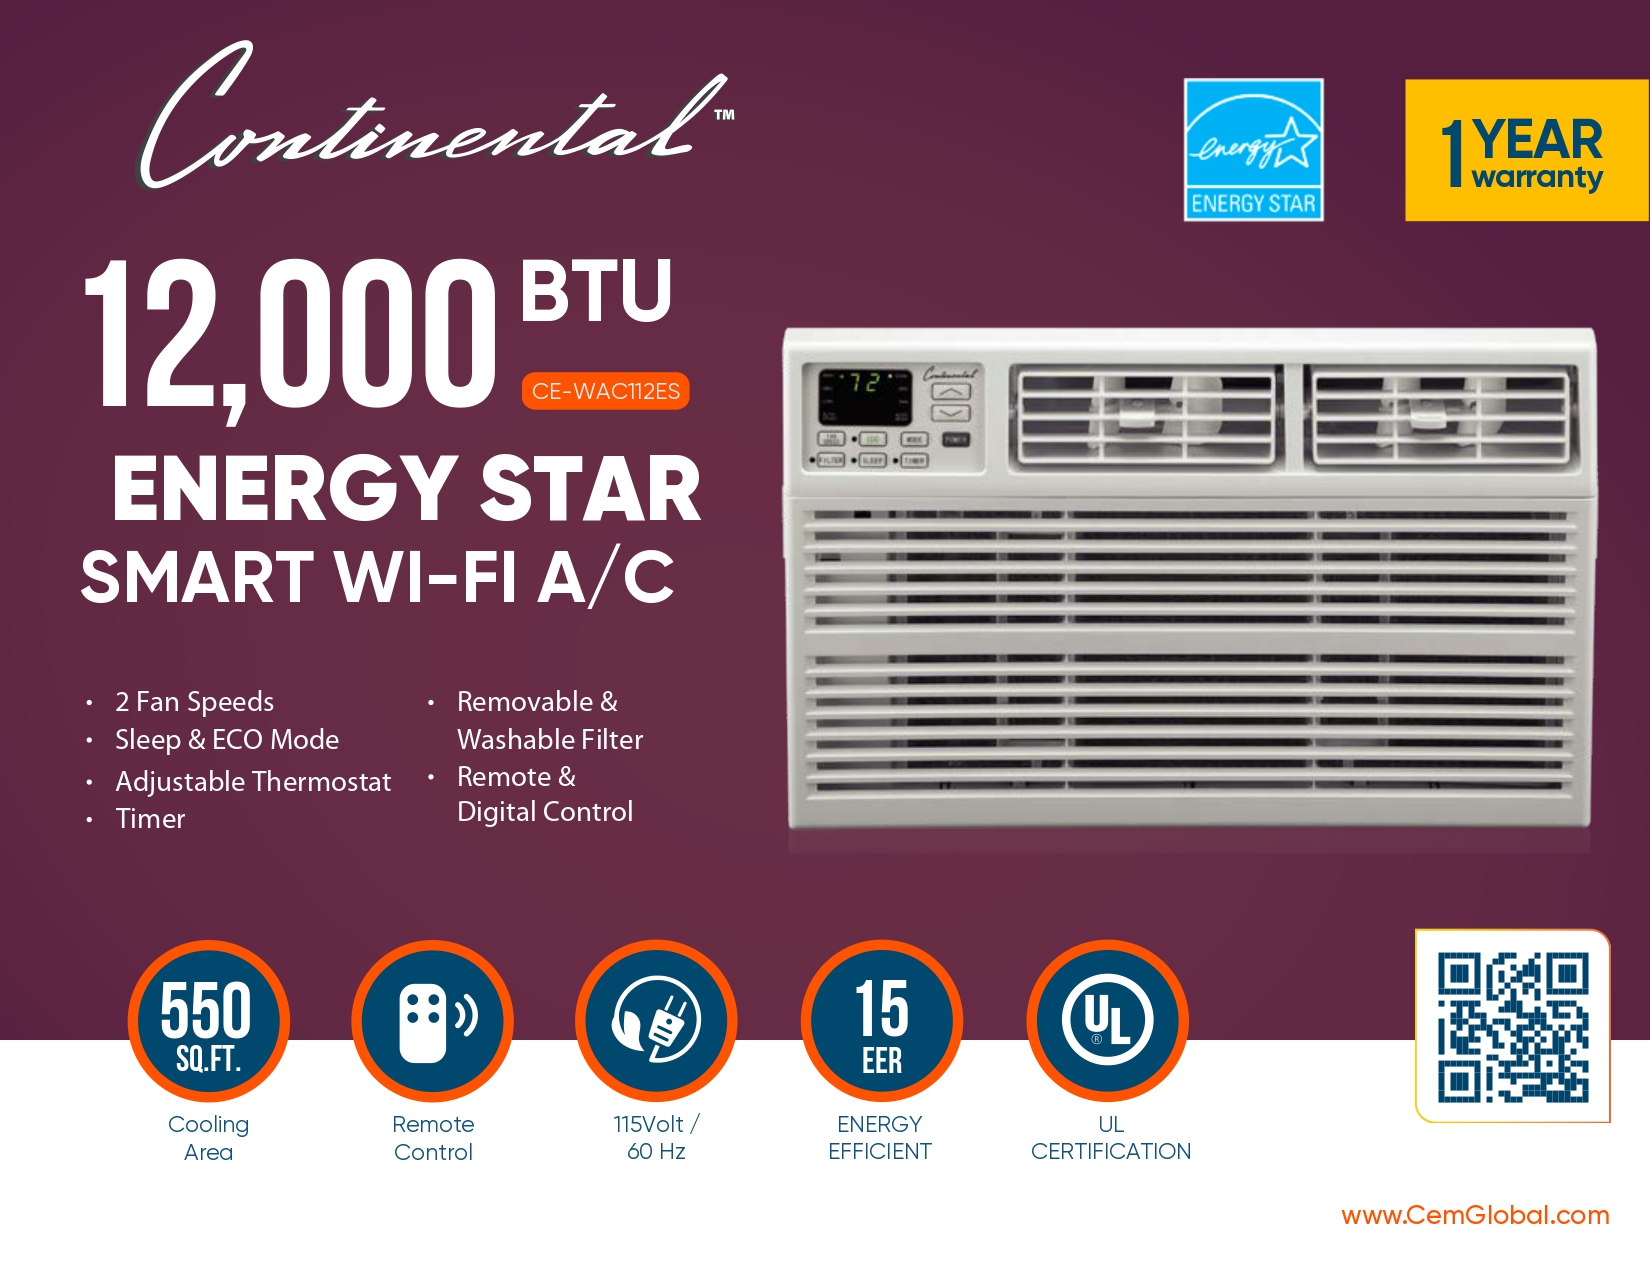 12,000 BTU ENERGY STAR SMART WI-FI A/C